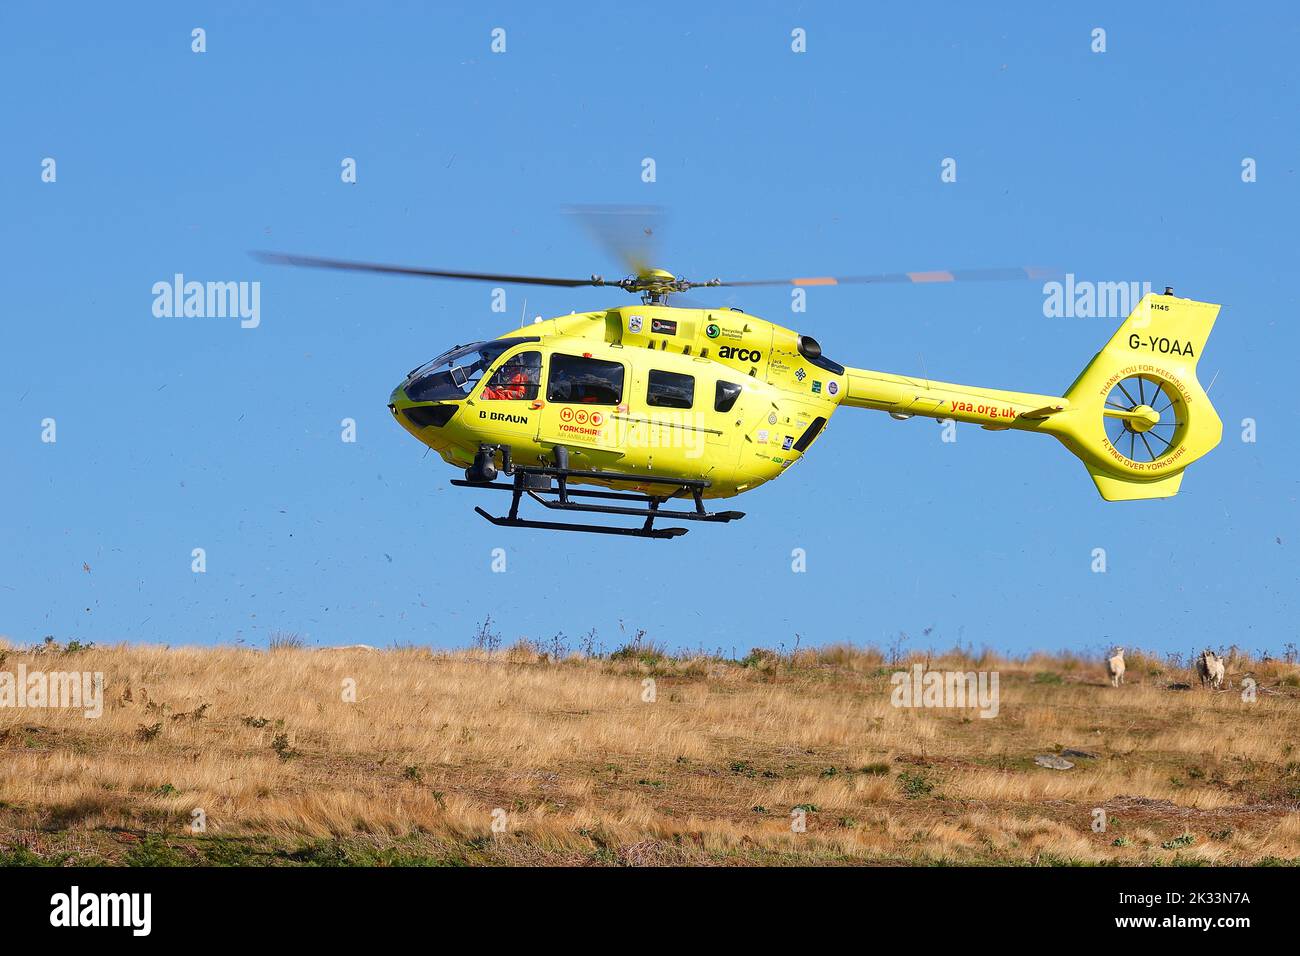 La ambulancia aérea de Yorkshire aterriza en los páramos de Yorkshire del Norte, después de que un hombre cayera de la plataforma de la estación en Goathland Station Foto de stock